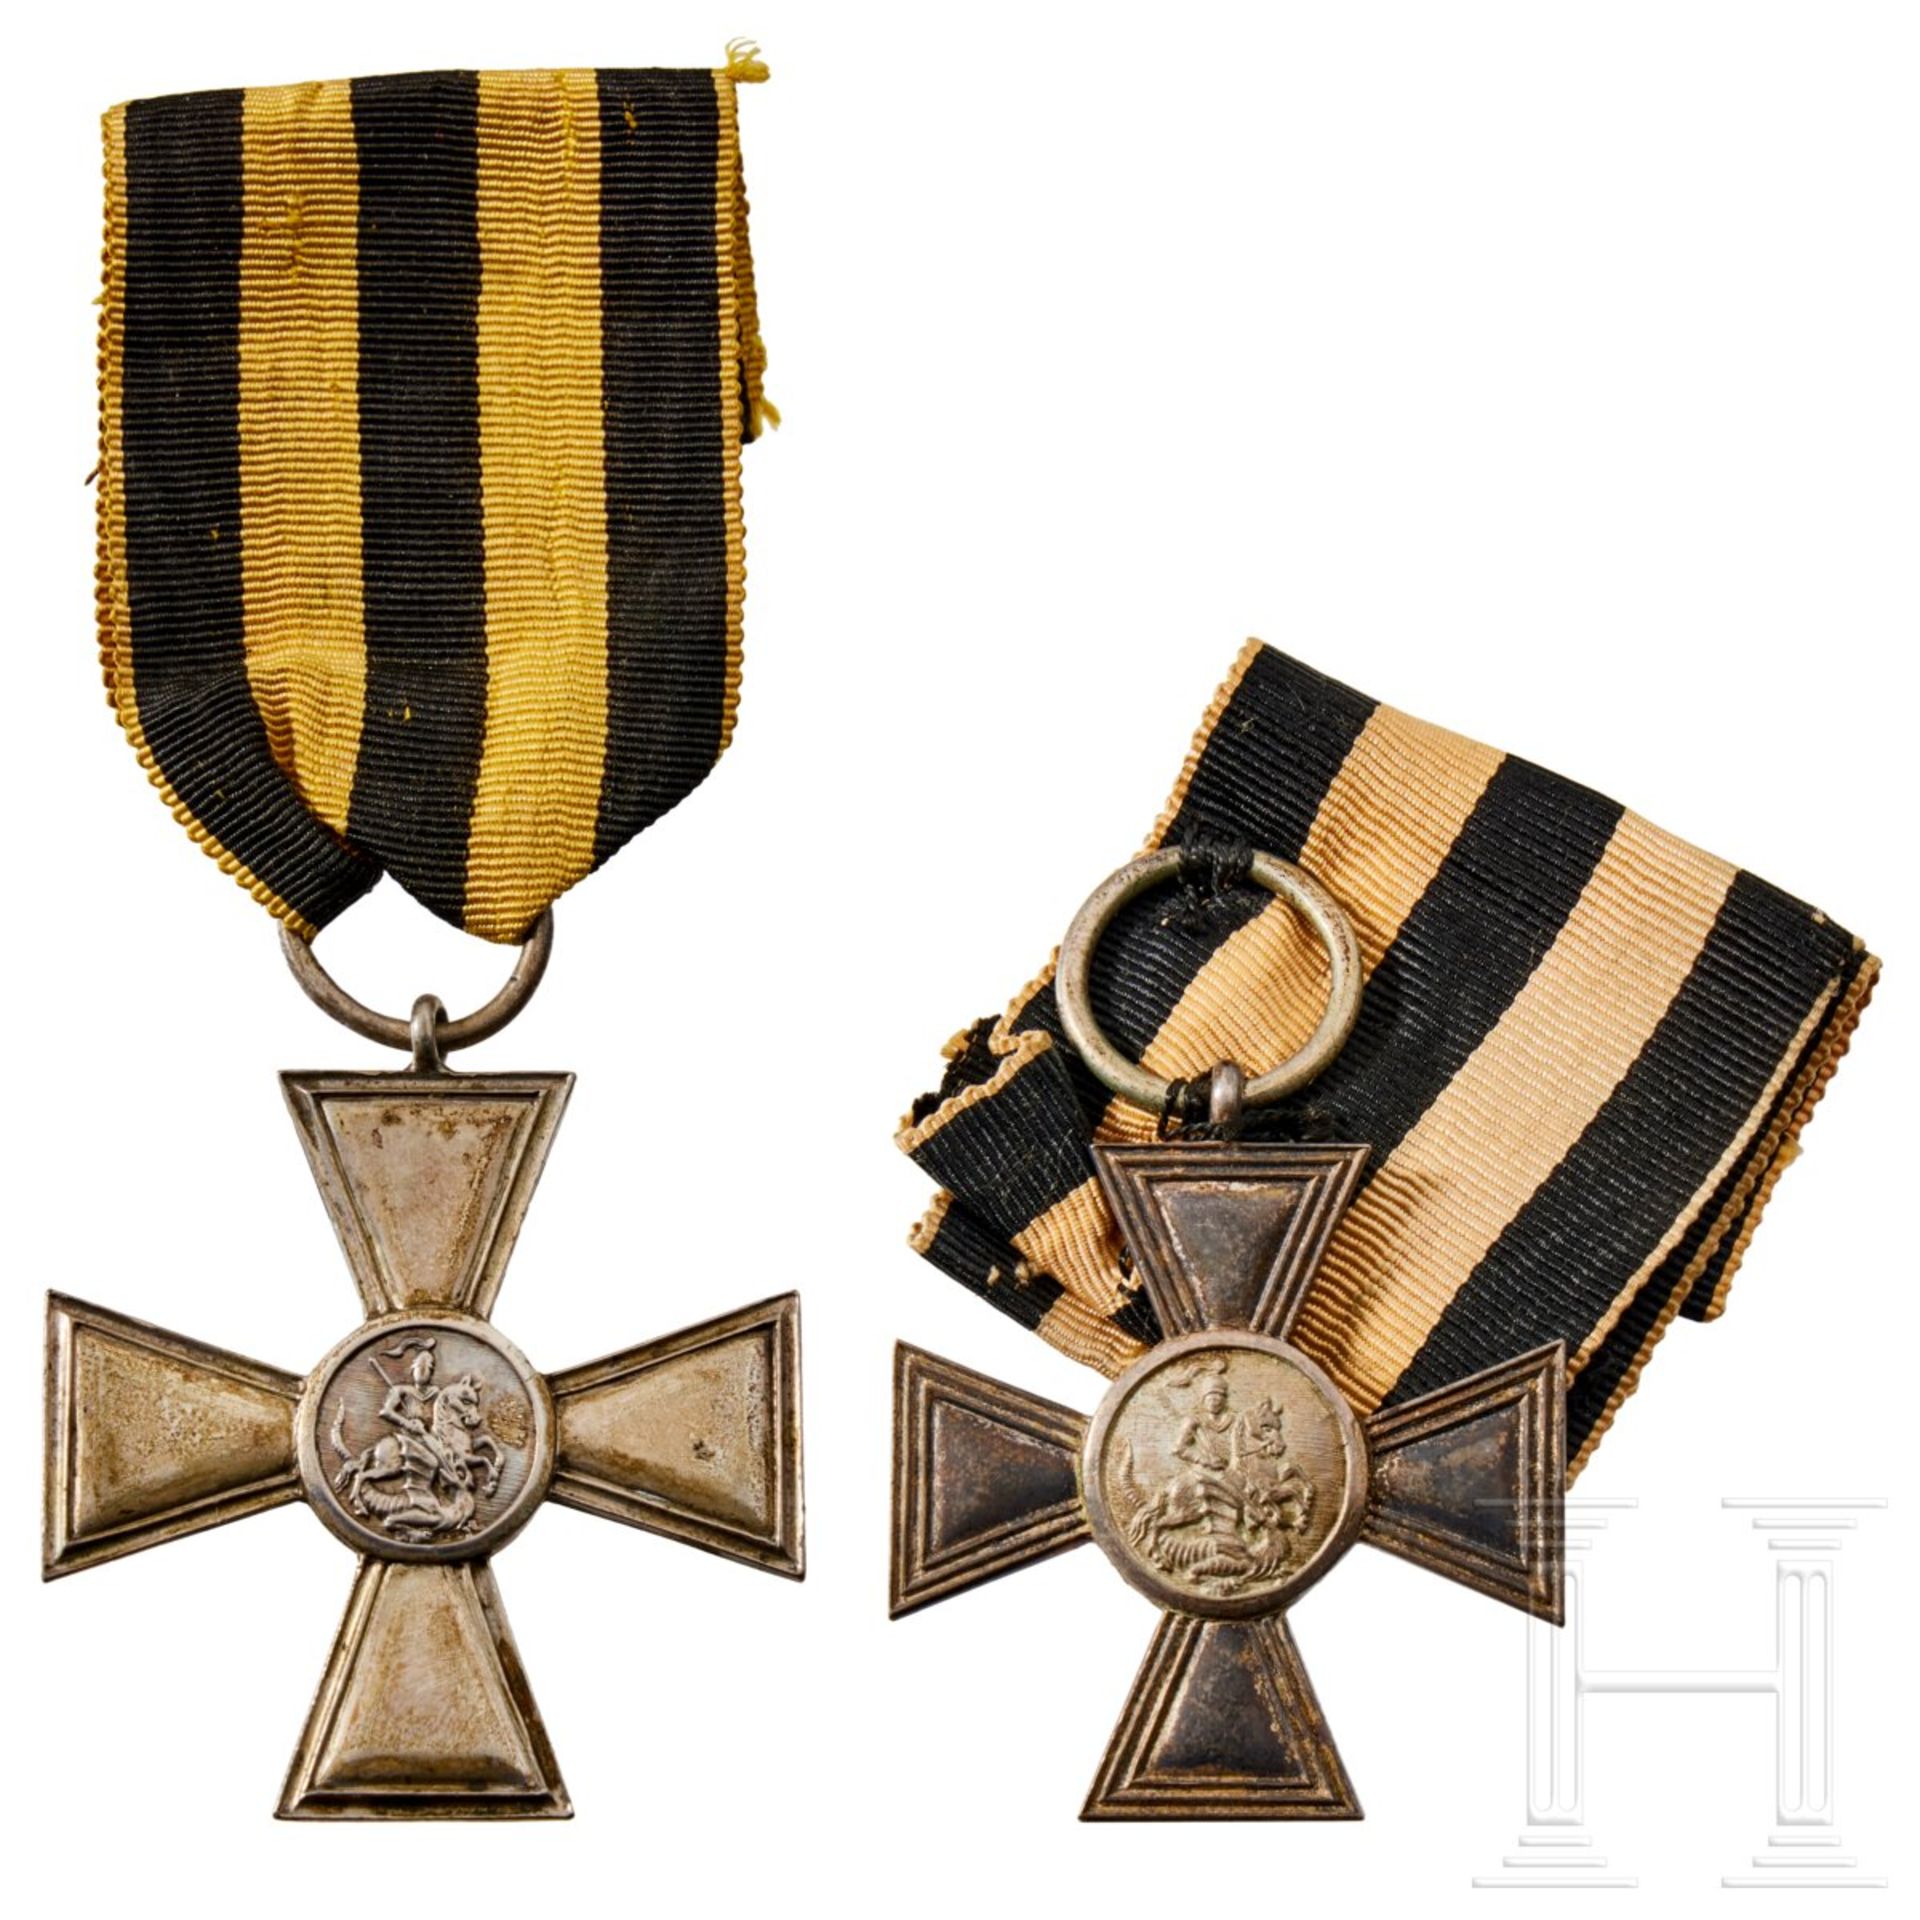 Zwei St.-Georgs-Kreuze, private Fertigungen, Russland bzw. deutsche Fertigung, 19. bzw. Anfang 20. J